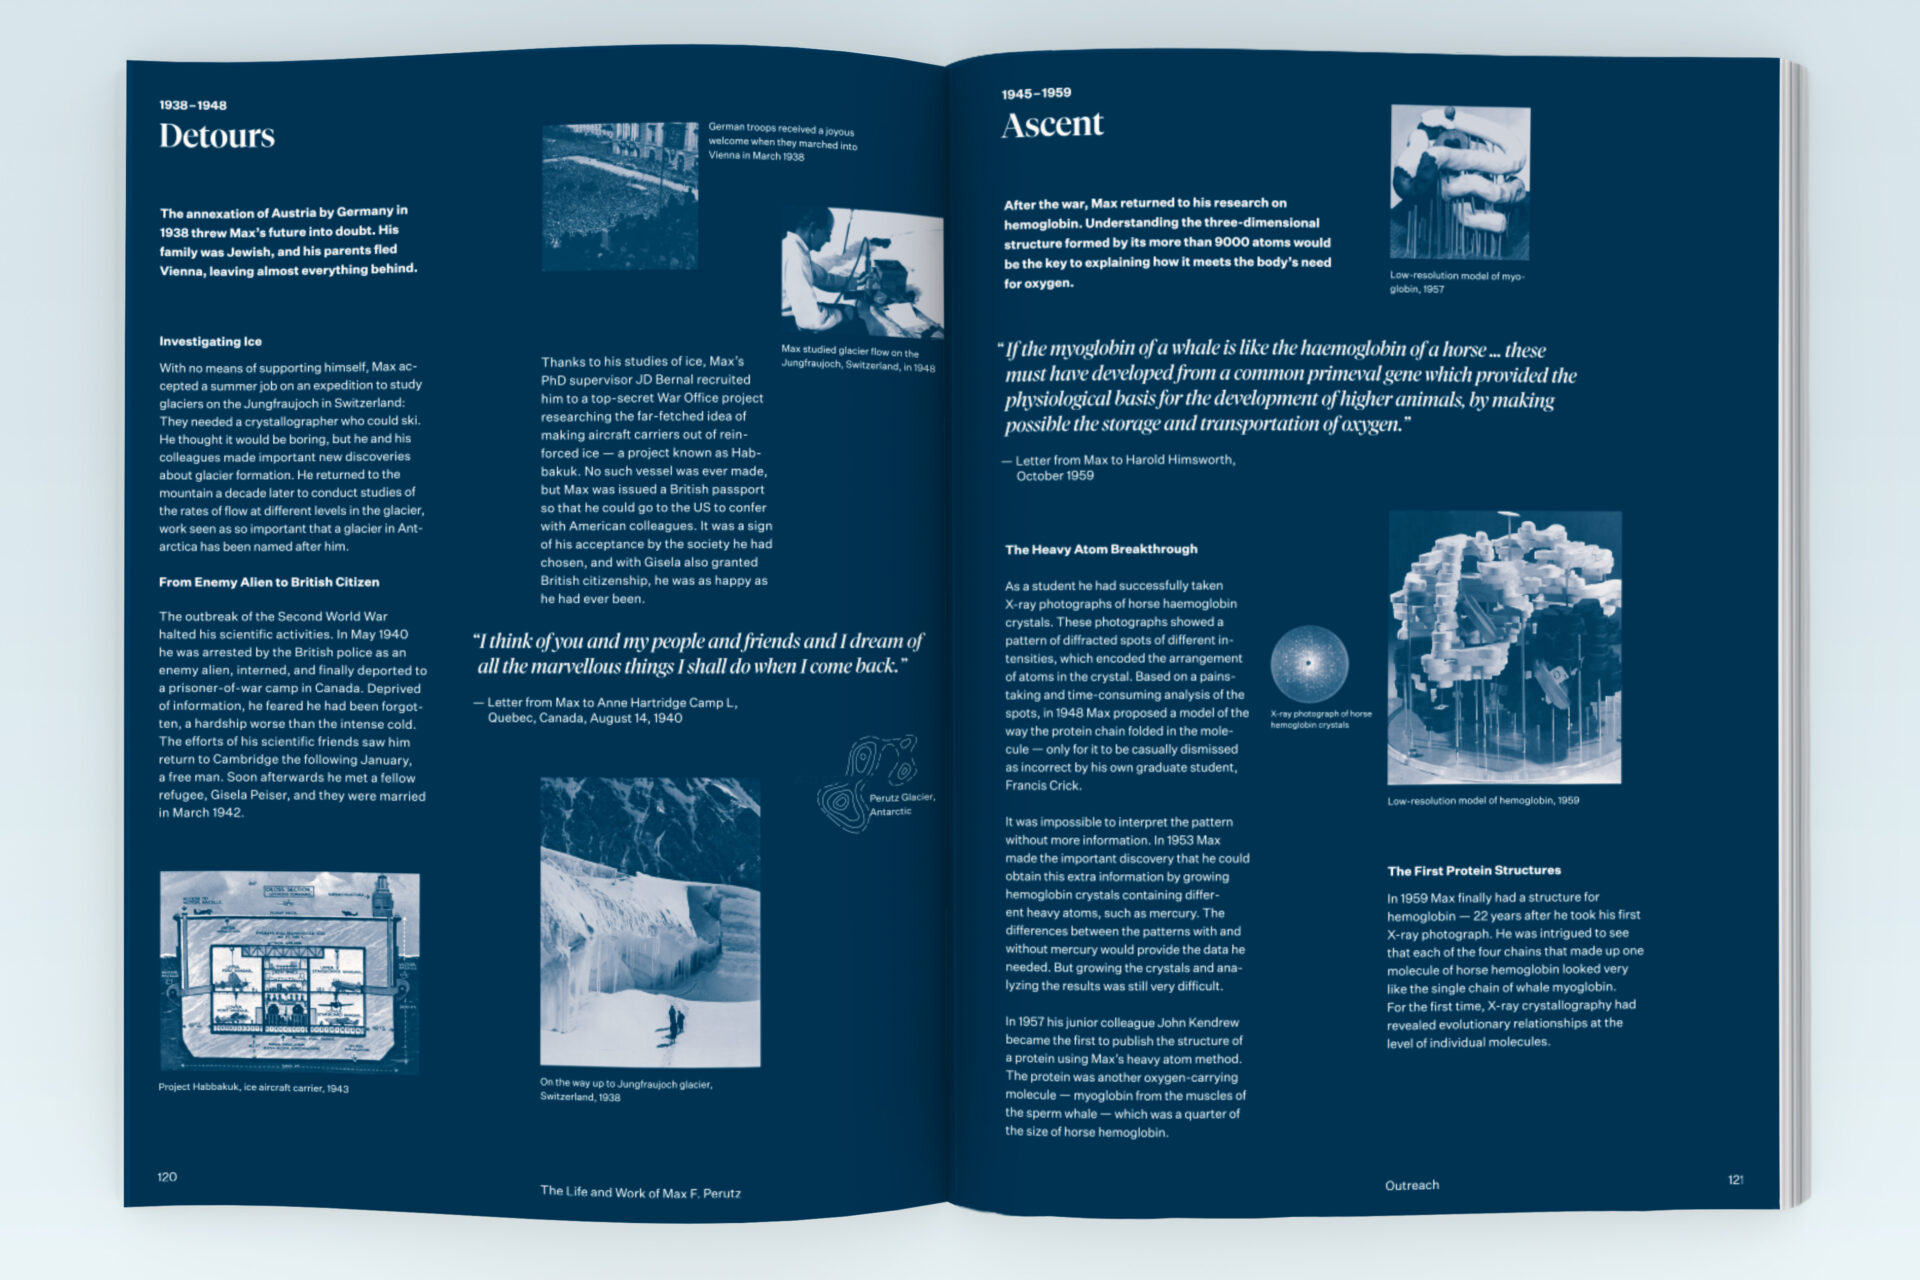 Doppelseite über das Leben von Max Perutz, mit Fotos und Text in weiß auf blauem Hintergrund